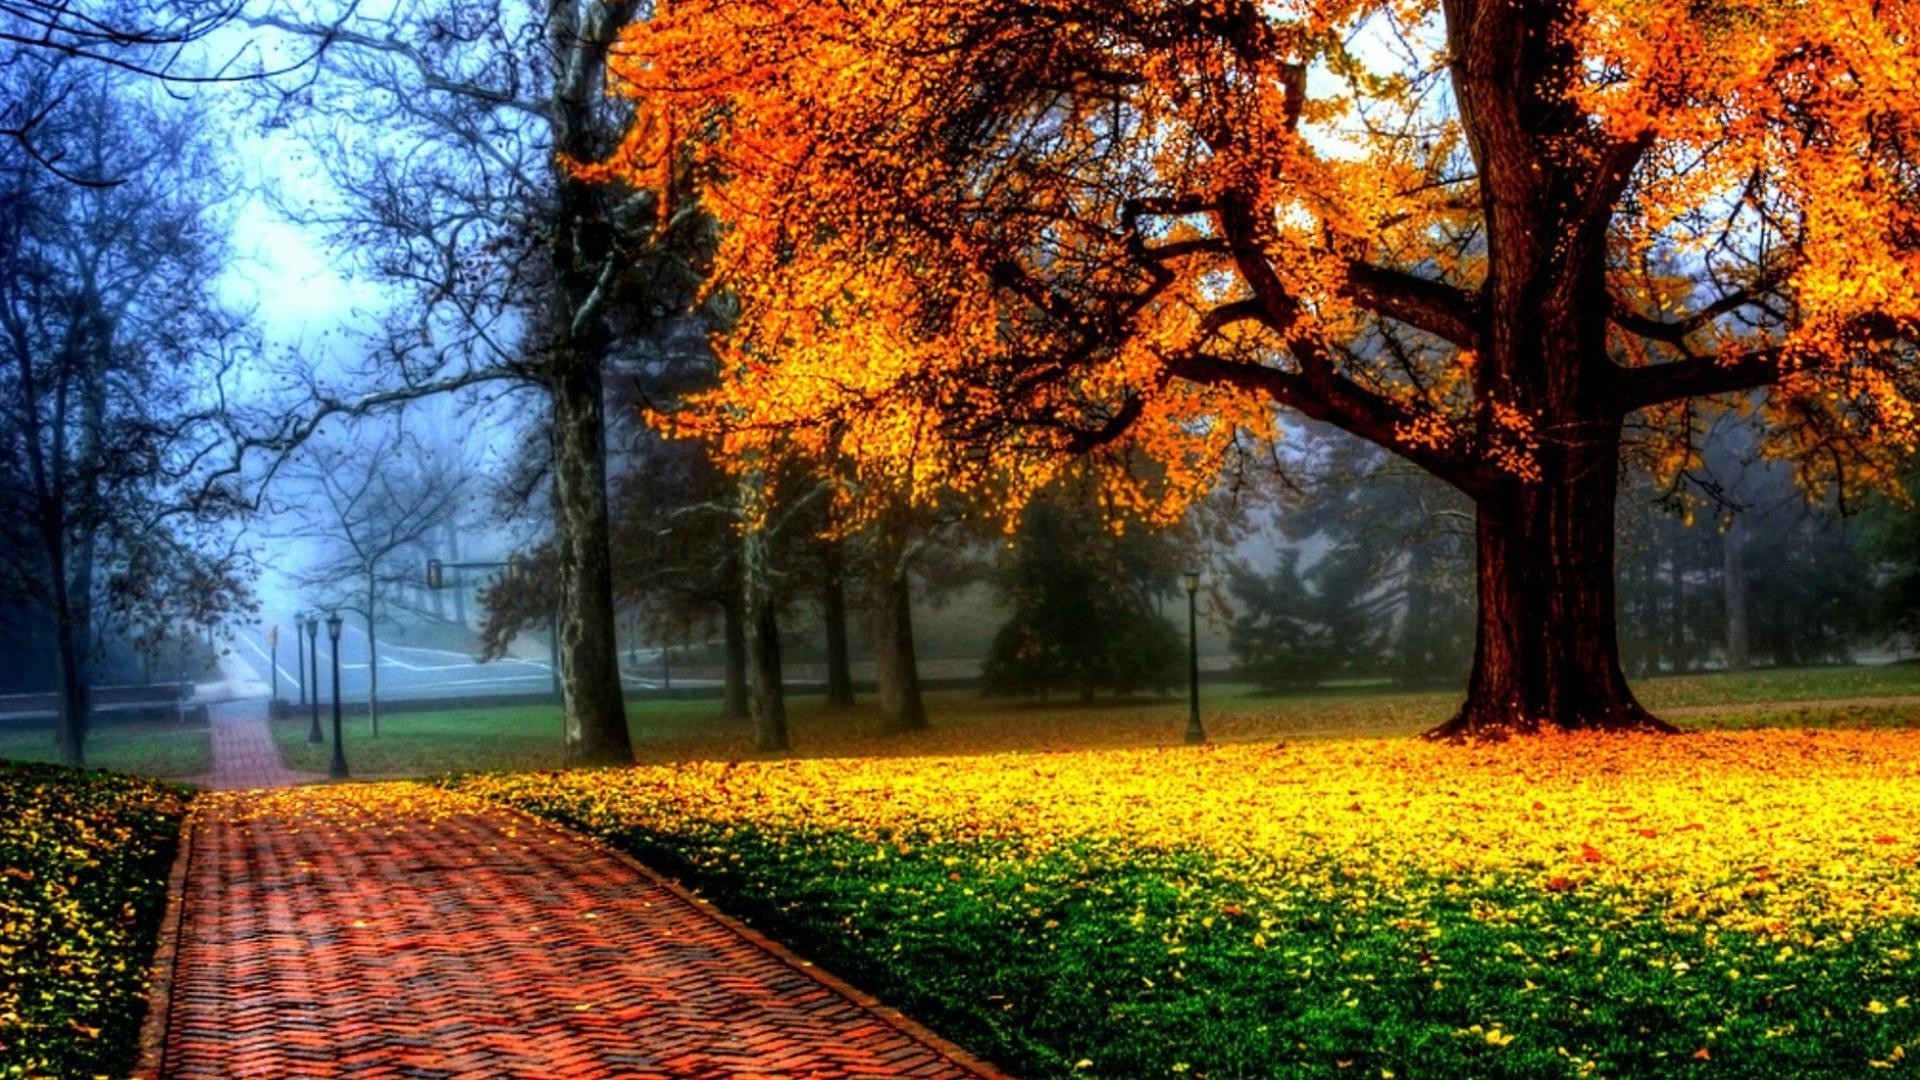 осень осень дерево лист сезон природа парк древесины кленовый пейзаж живописный на открытом воздухе солнце рассвет хорошую погоду среды цвет пейзажи золото яркий